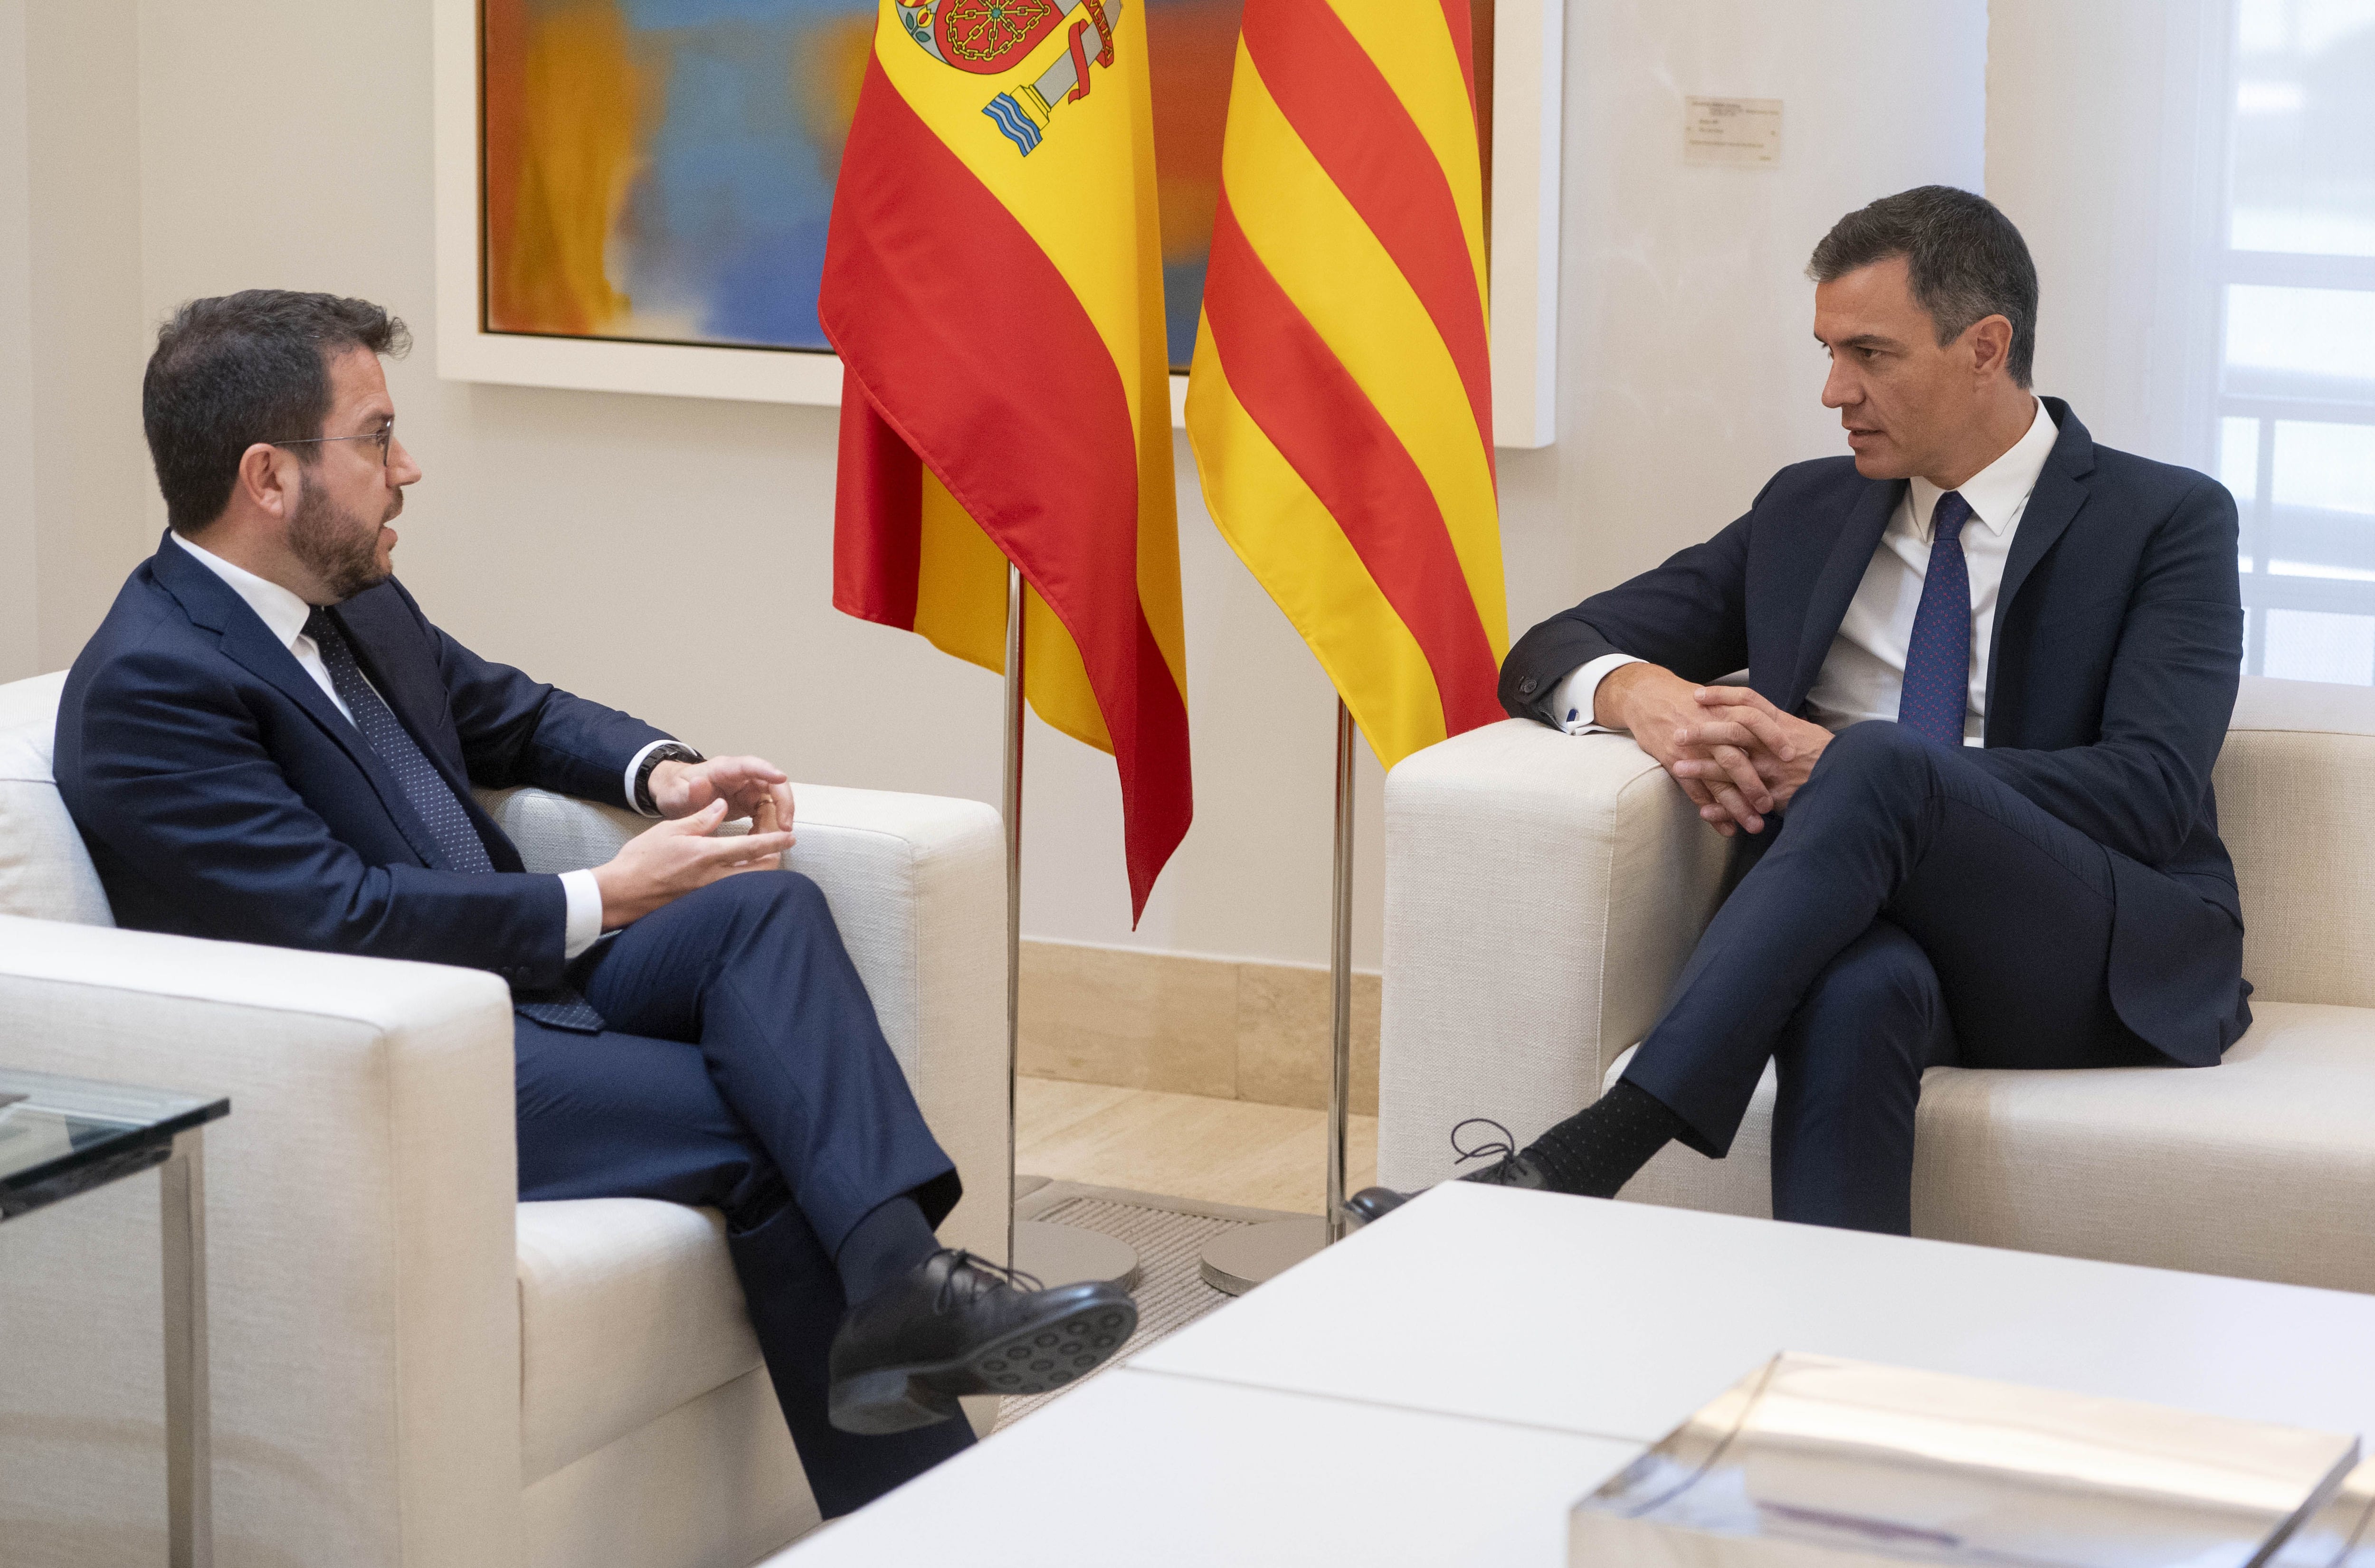 DVD1114 (15/07/2022) El presidente de gobierno Pedro Sánchez recibe el presidente de la Generalitat Pere Aragonés en el palacio de la Moncloa en Madrid. ANDREA COMAS